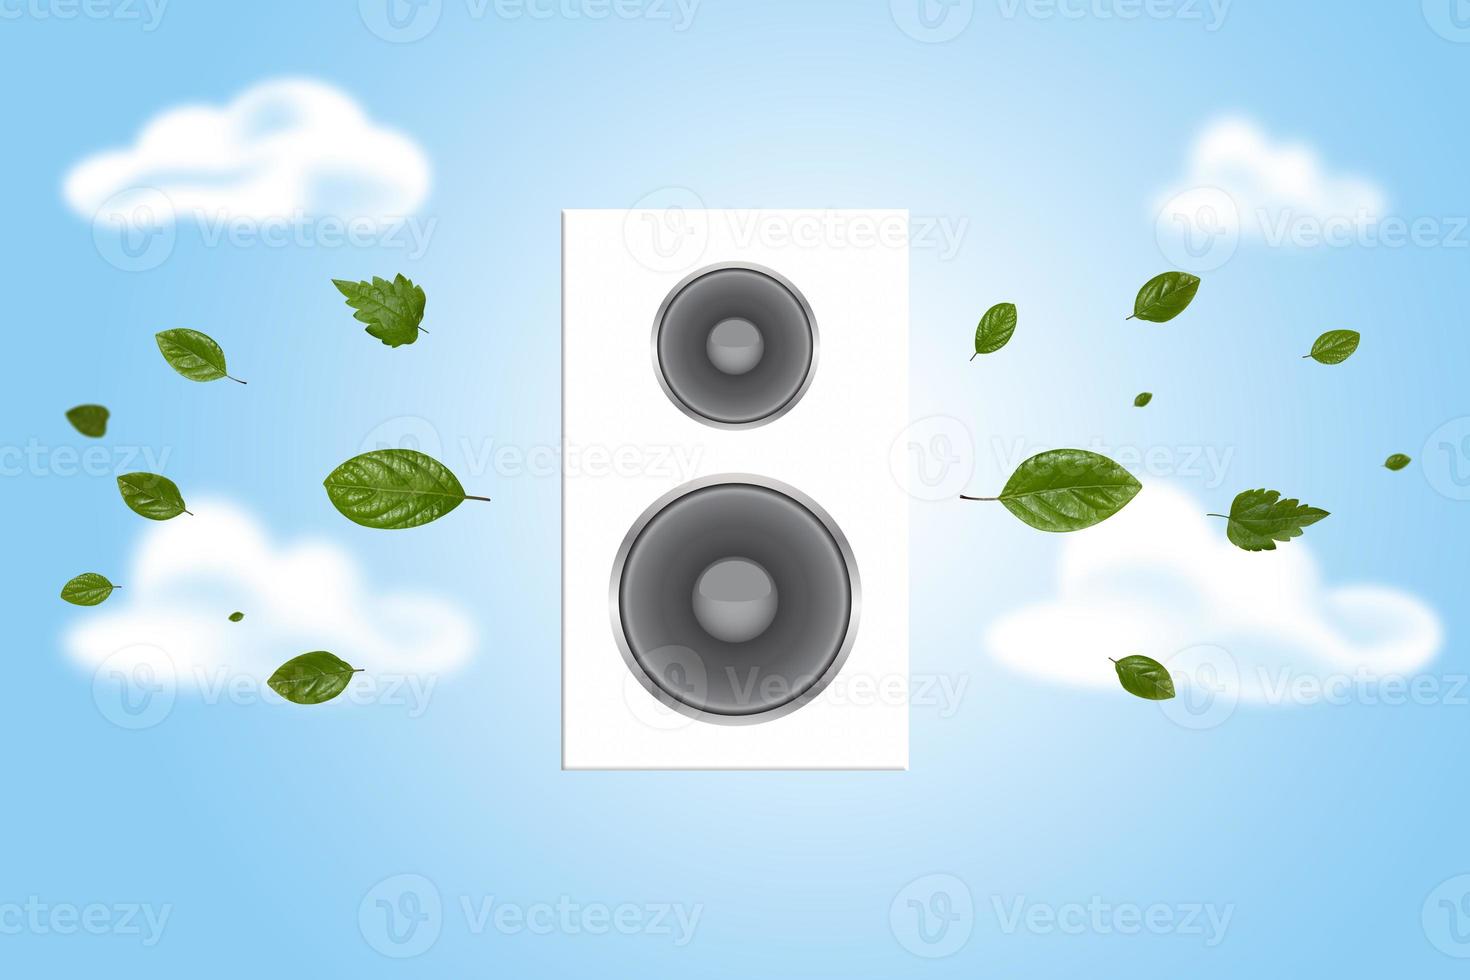 lyssna försiktigt till Vad natur berättar oss. högtalare på en pastell blå bakgrund. minimal natur begrepp. annons aning foto